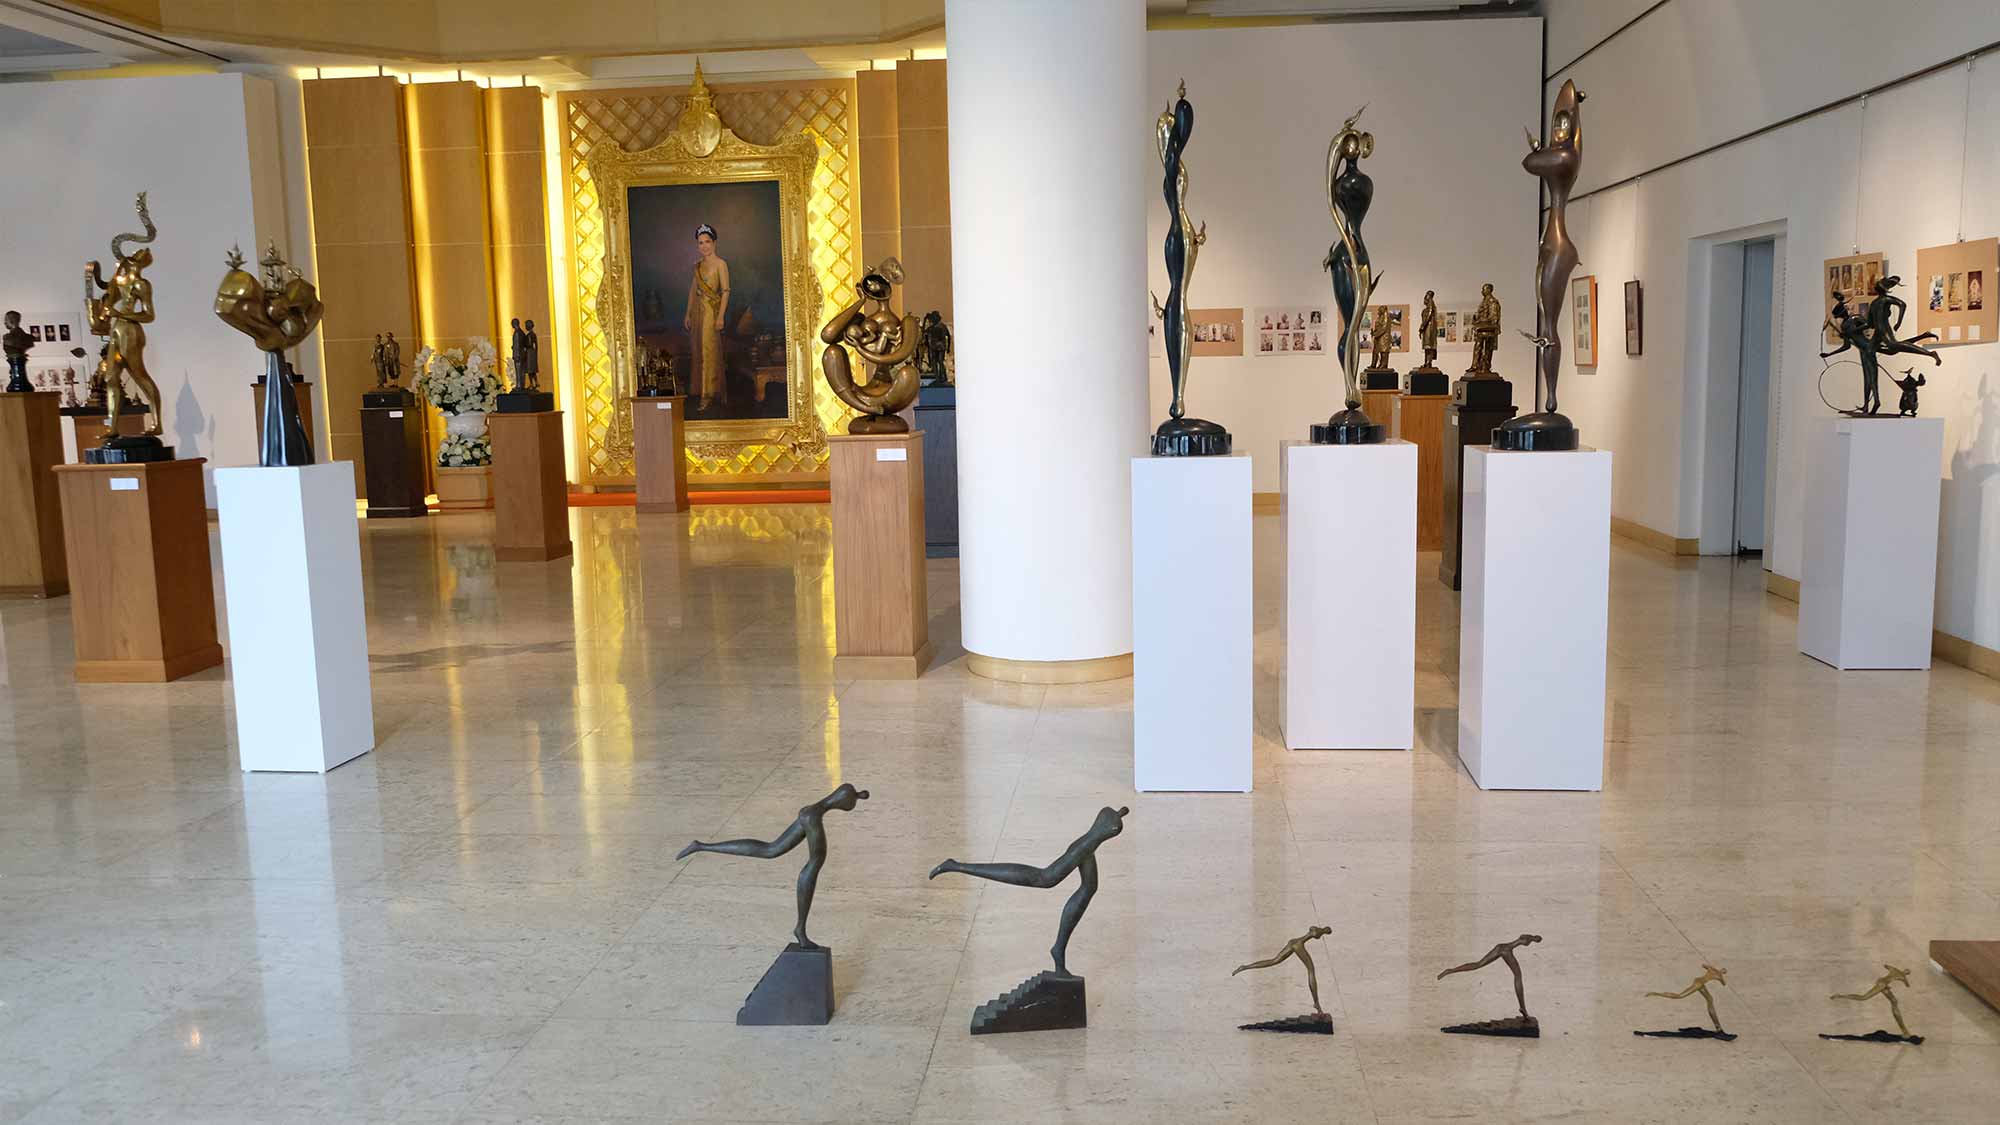 Exhibition The Reflection of Life 36 Years Retrospective By Manop Suwanpinta | นิทรรศการผลงานศิลปกรรม “เงาสะท้อนแห่งชีวิต” ผลงานย้อนหลัง 36 ปี โดย มานพ สุวรรณปินฑะ